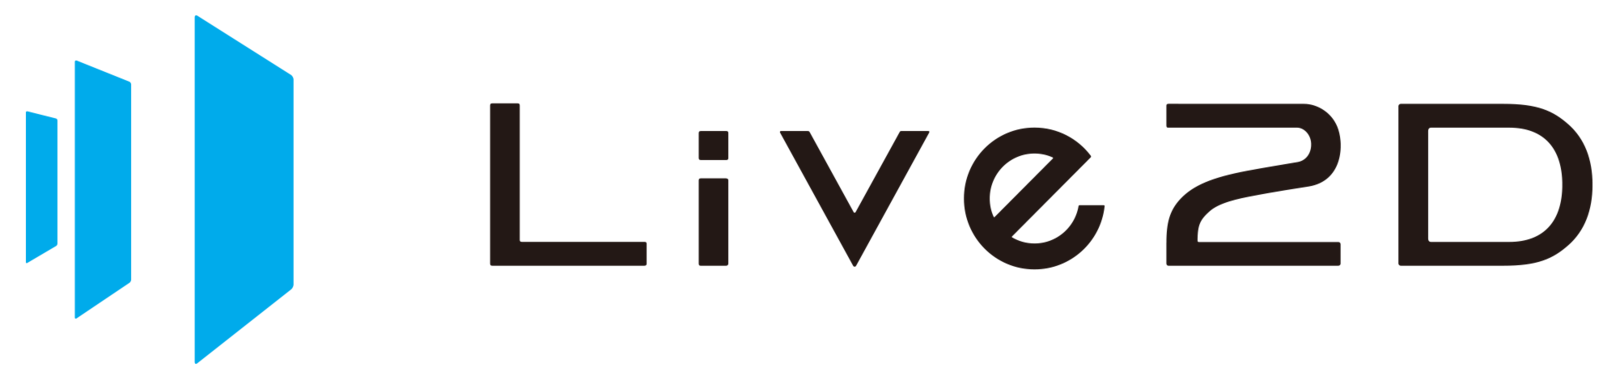 株式会社 Live2dの採用 求人 転職サイトgreen グリーン